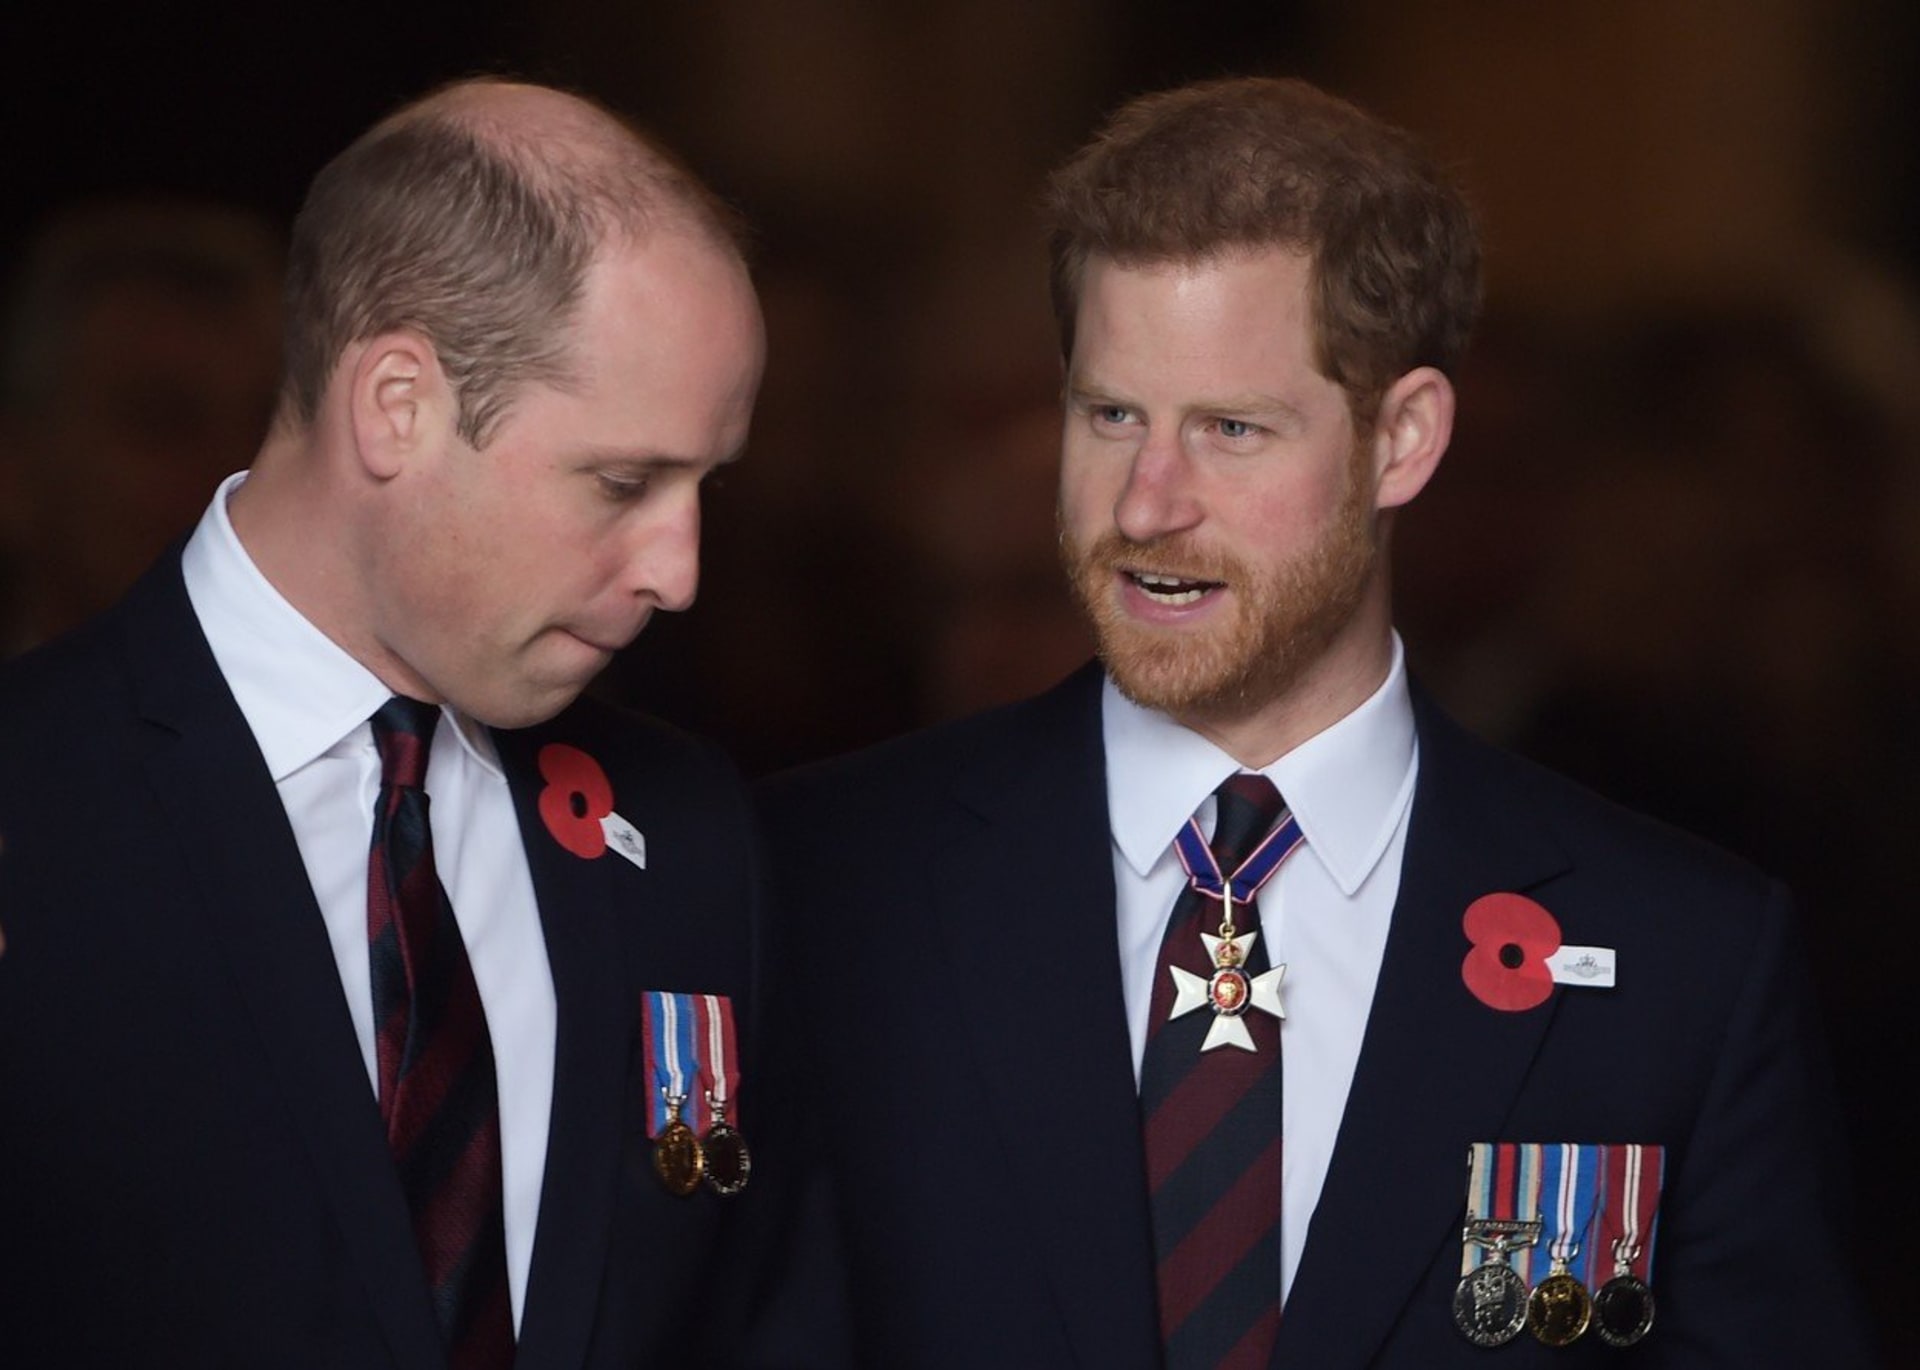 Mají princové William a Harry utajeného bratra?